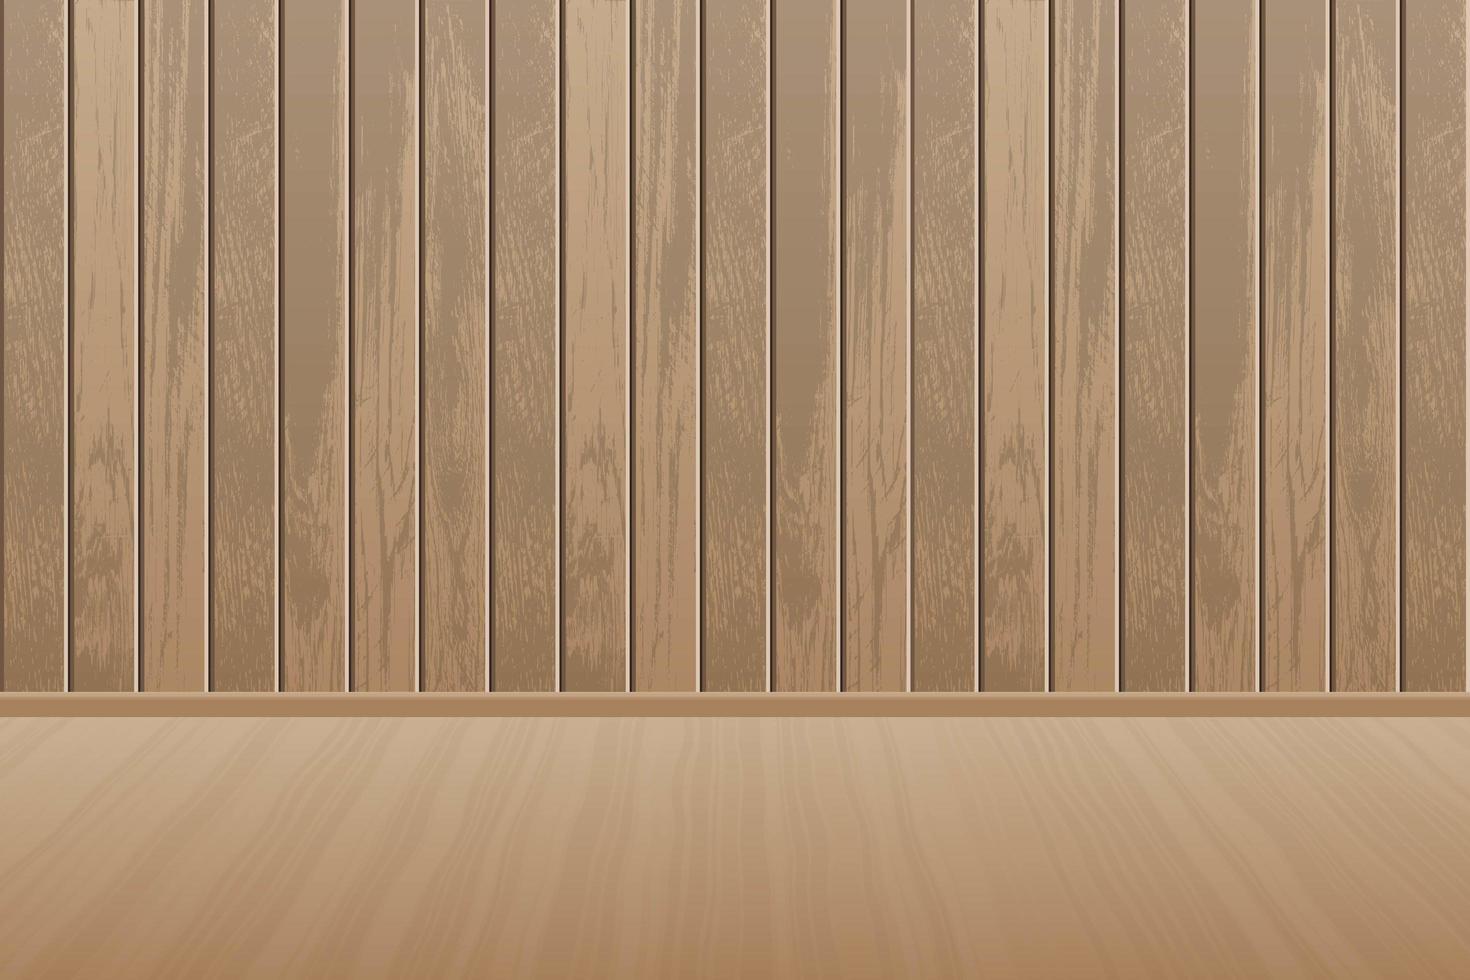 realistische lege houten kamer met houten vloer vector